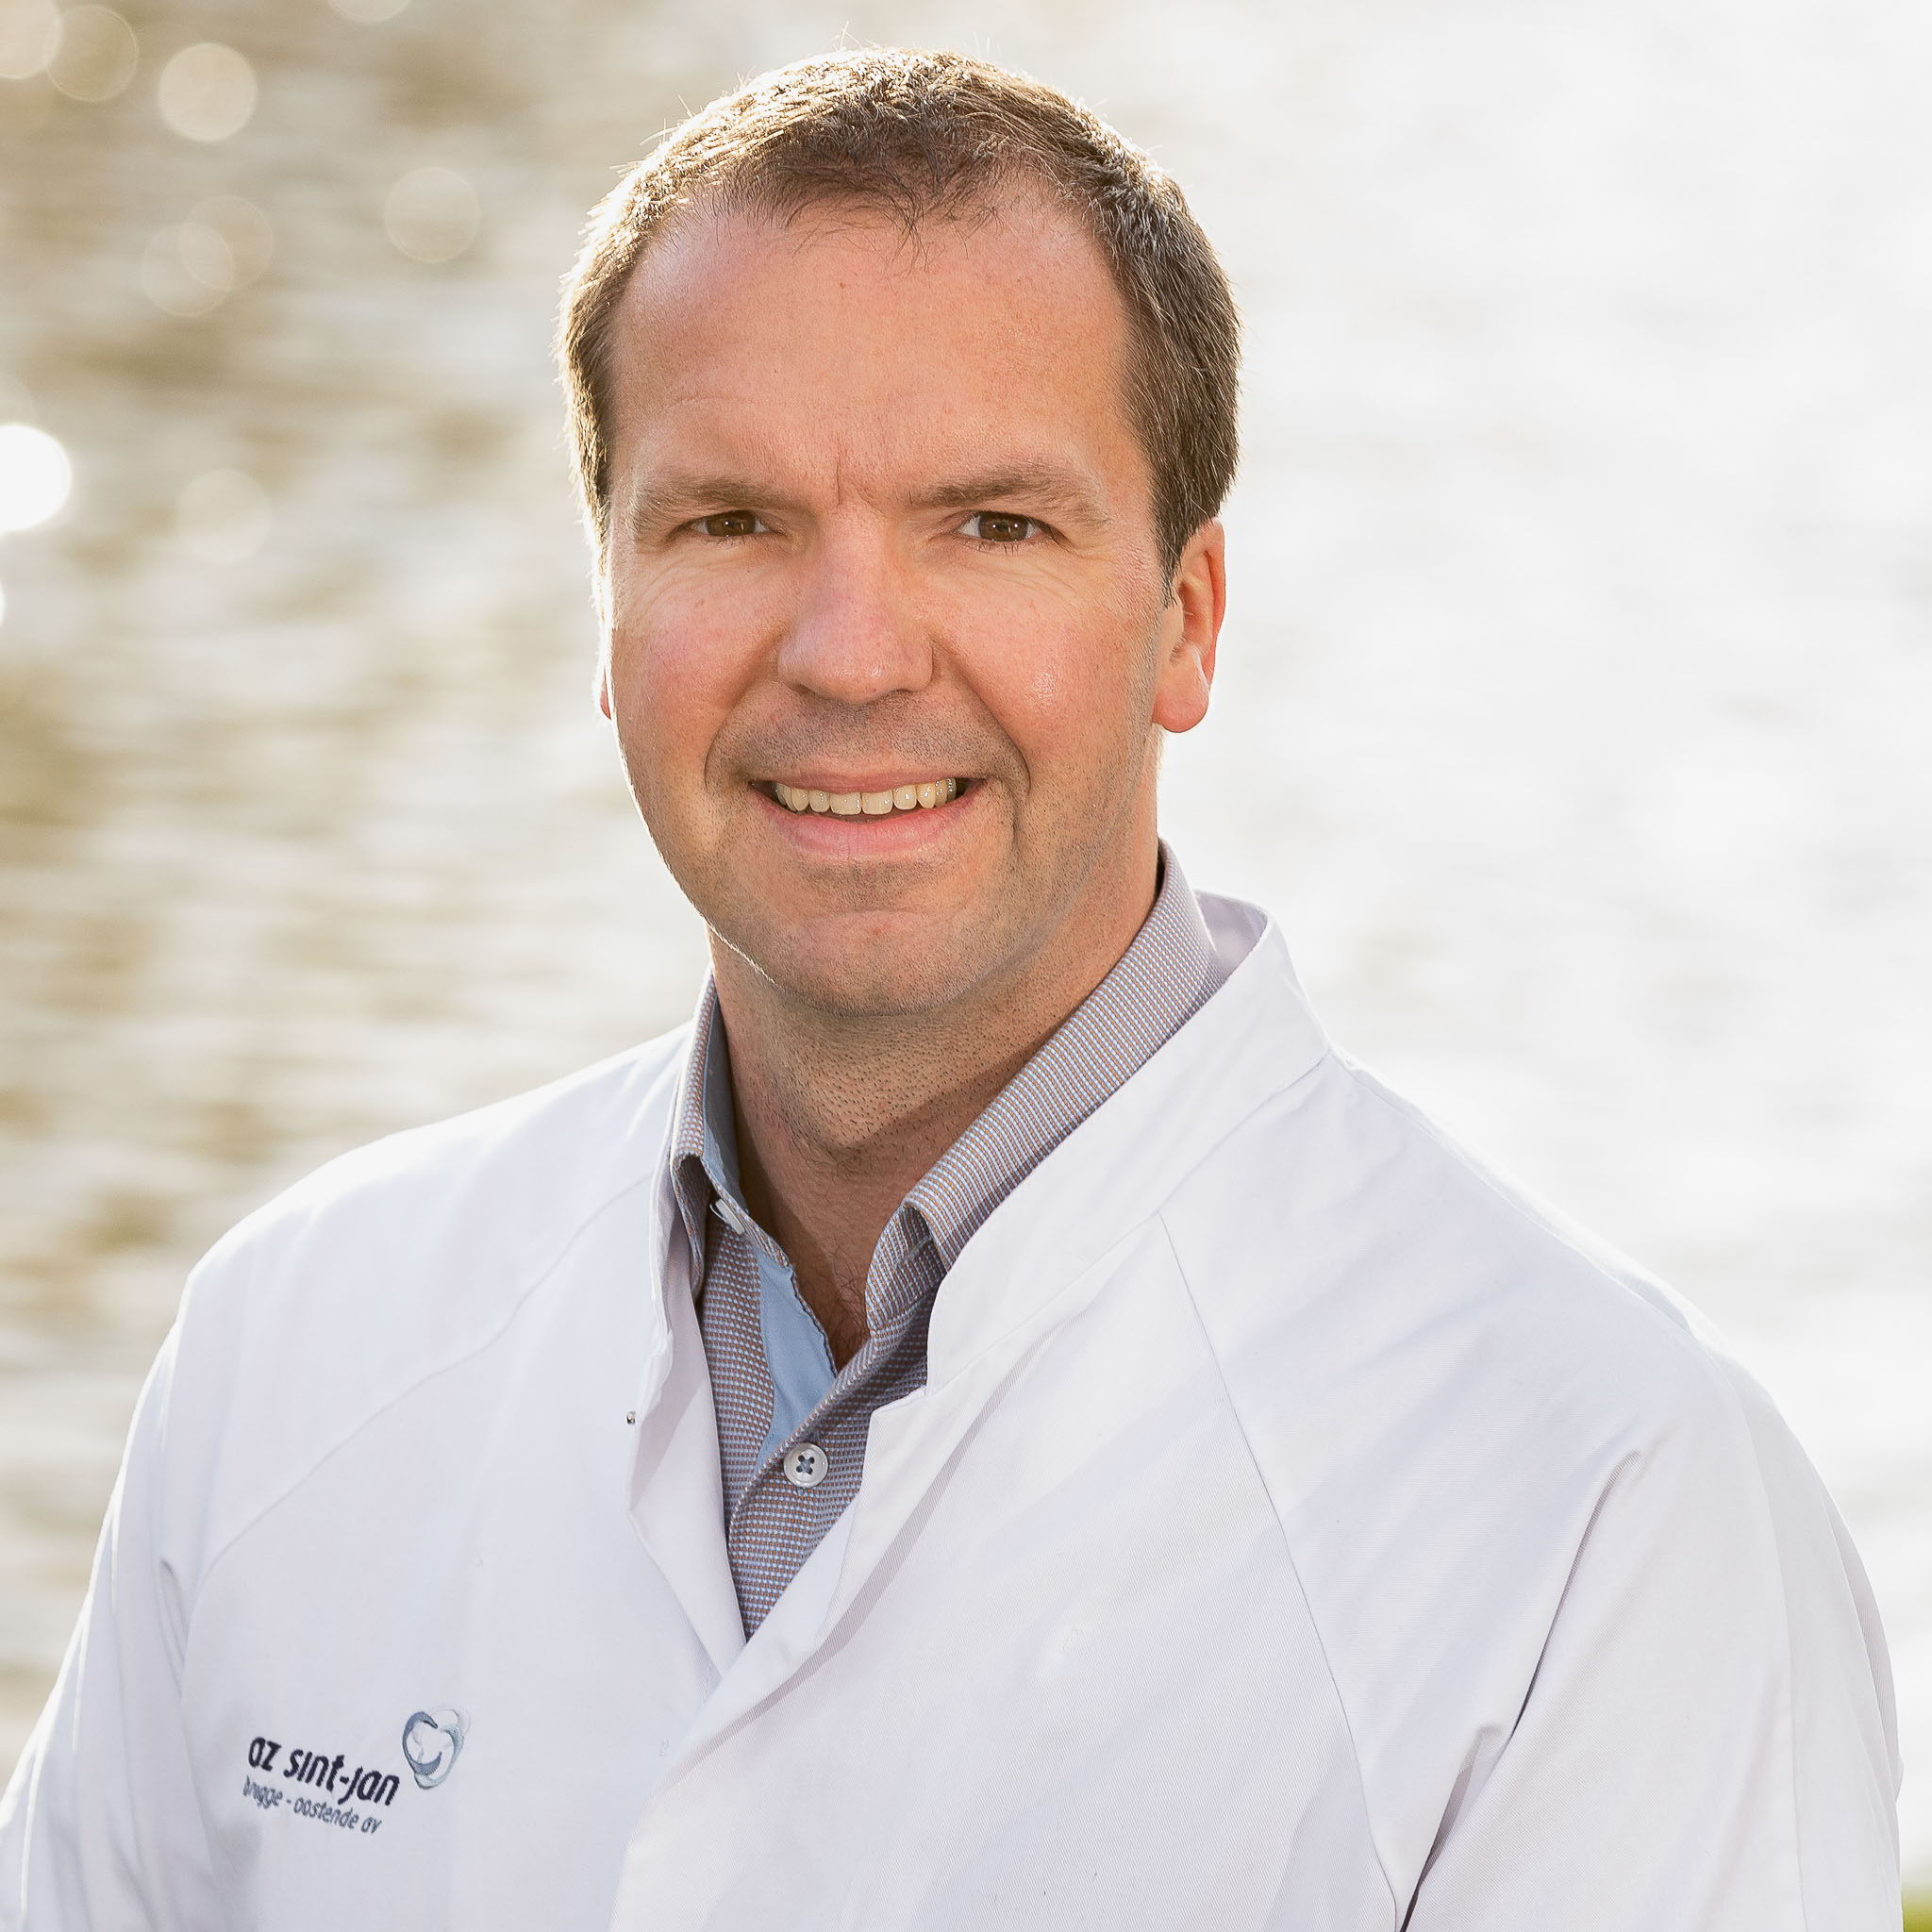 Dr. Bob Lerut van de dienst Neus-, keel- en oorziekten